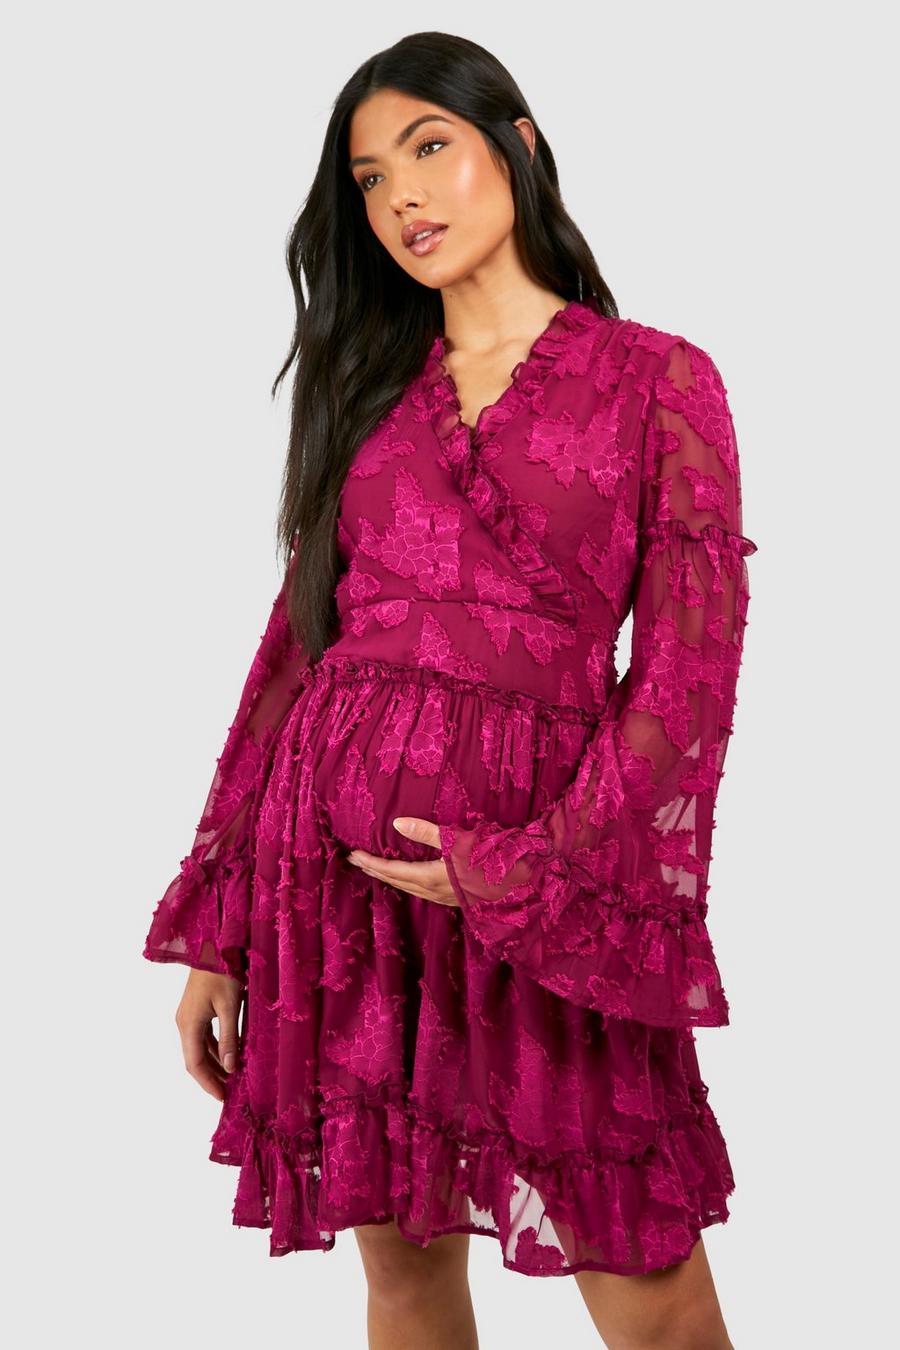 Maternité - Robe de grossesse courte fleurie à volants, Hot pink